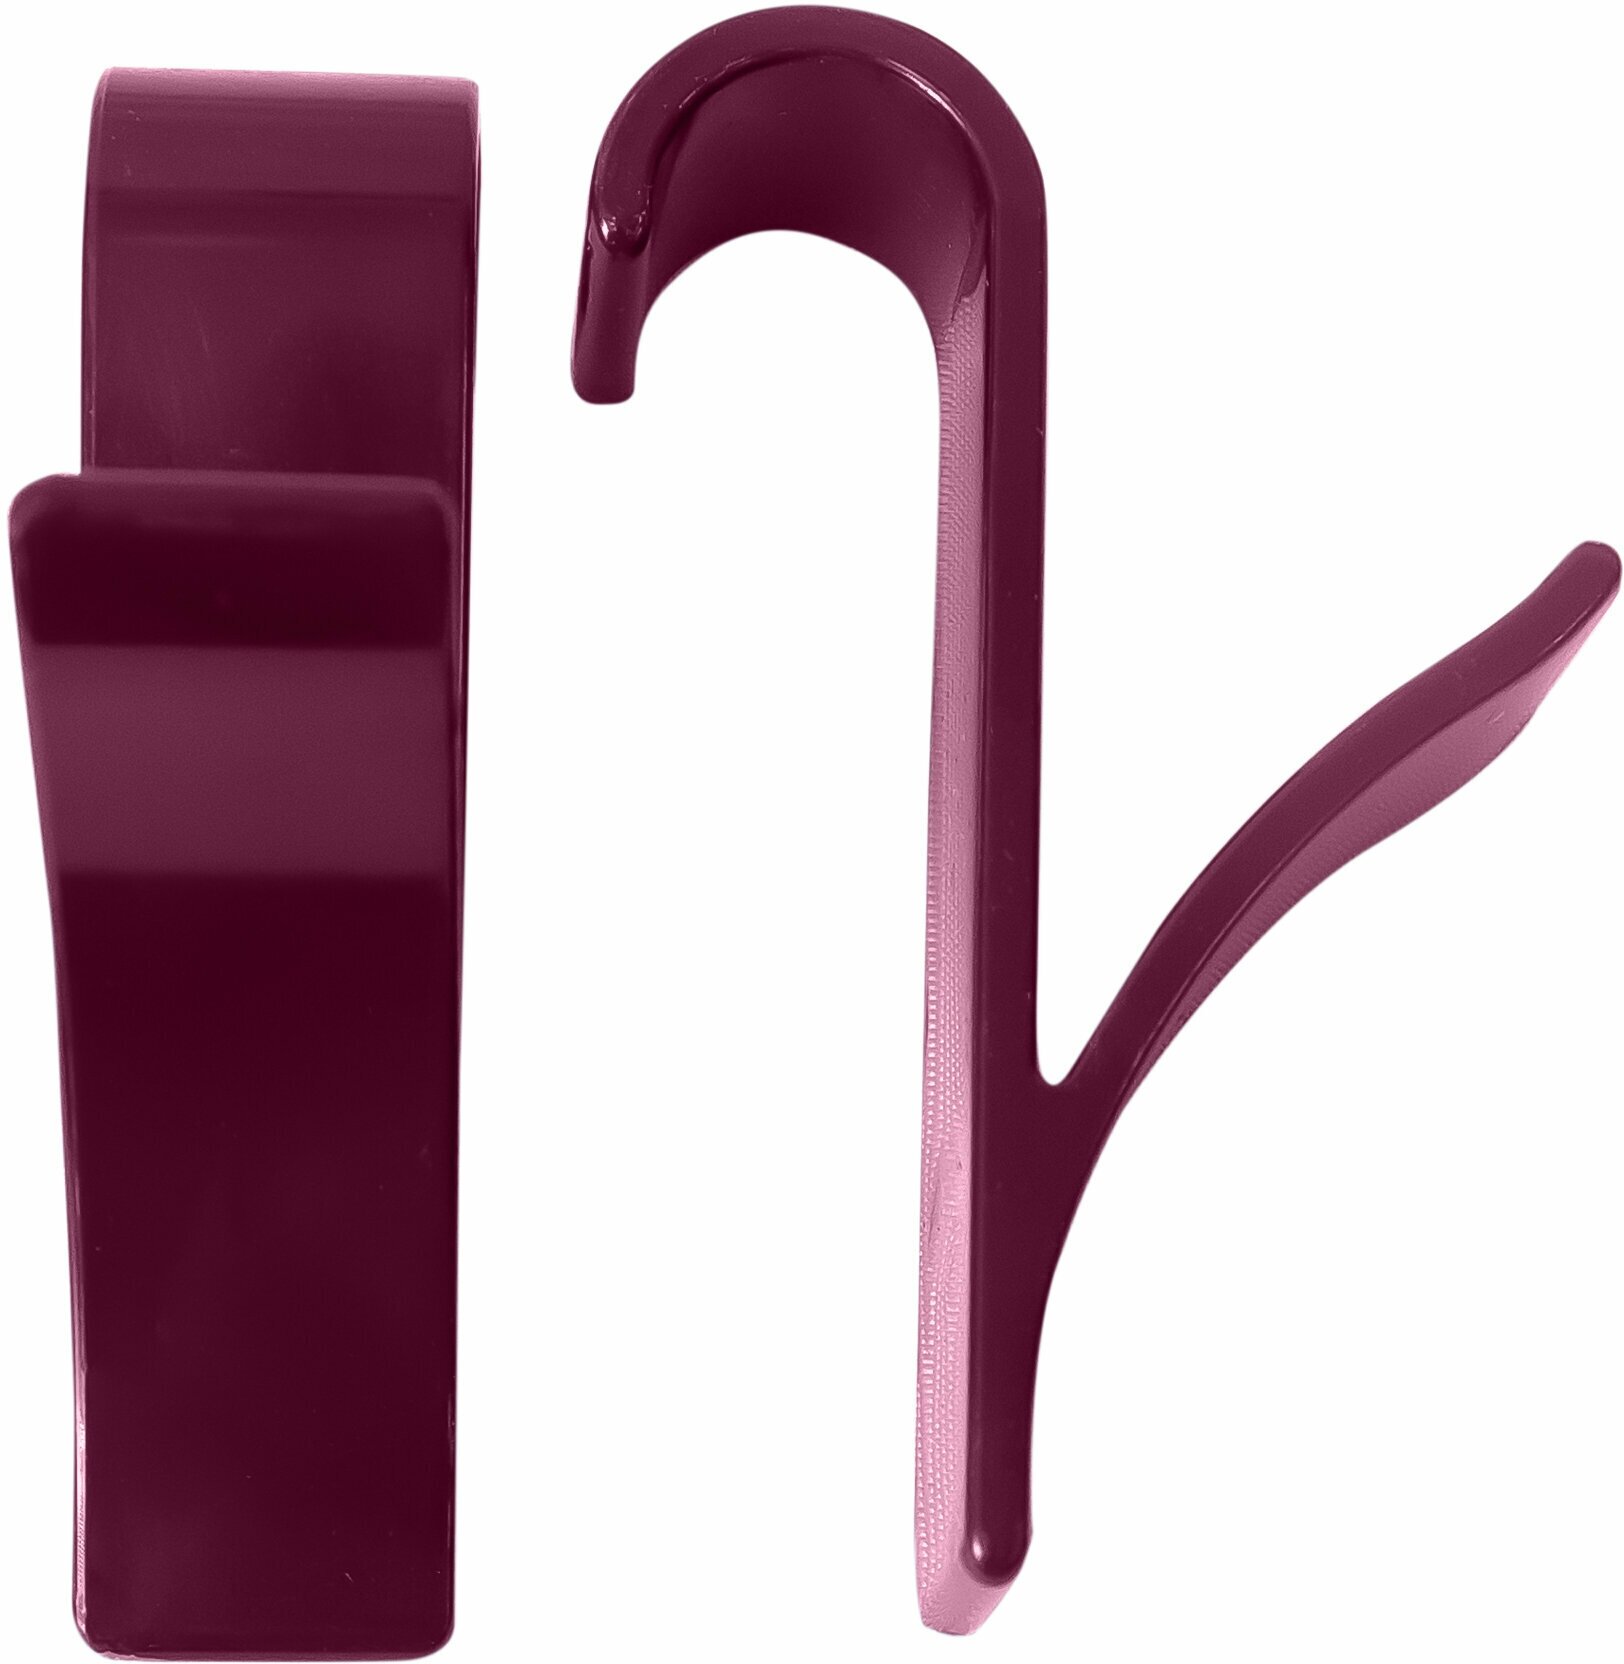 Комплект крючков для полотенцесушителя Primanova M-B24-12 2 шт диаметр 20 мм цвет пурпурный материал ABS пластик размер 9x6x10 вид крепления подвесное